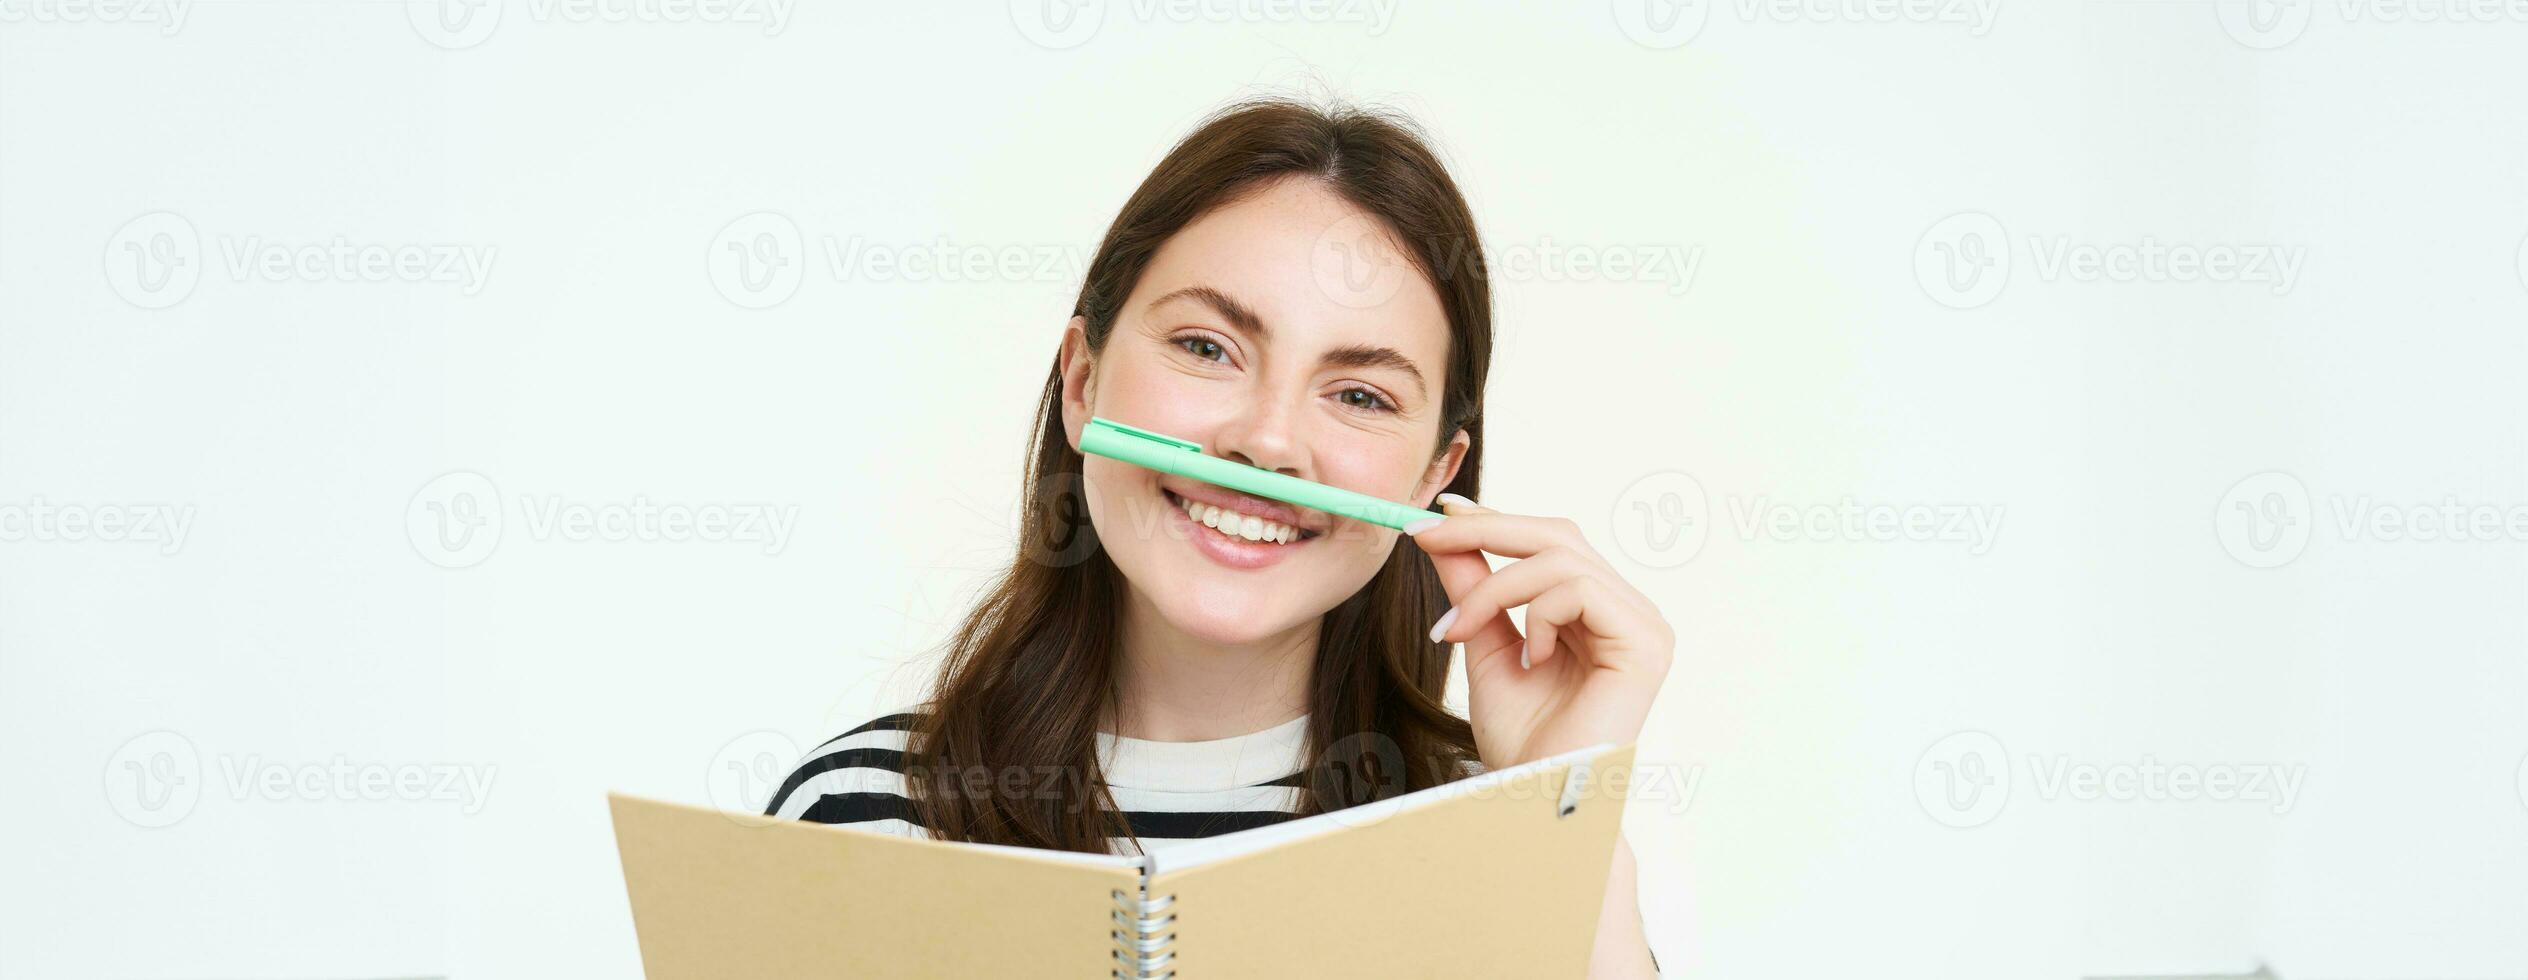 retrato do engraçado, sorridente mulher com caderno, segurando caneta Próximo para dela lábio e olhando feliz, branco fundo foto